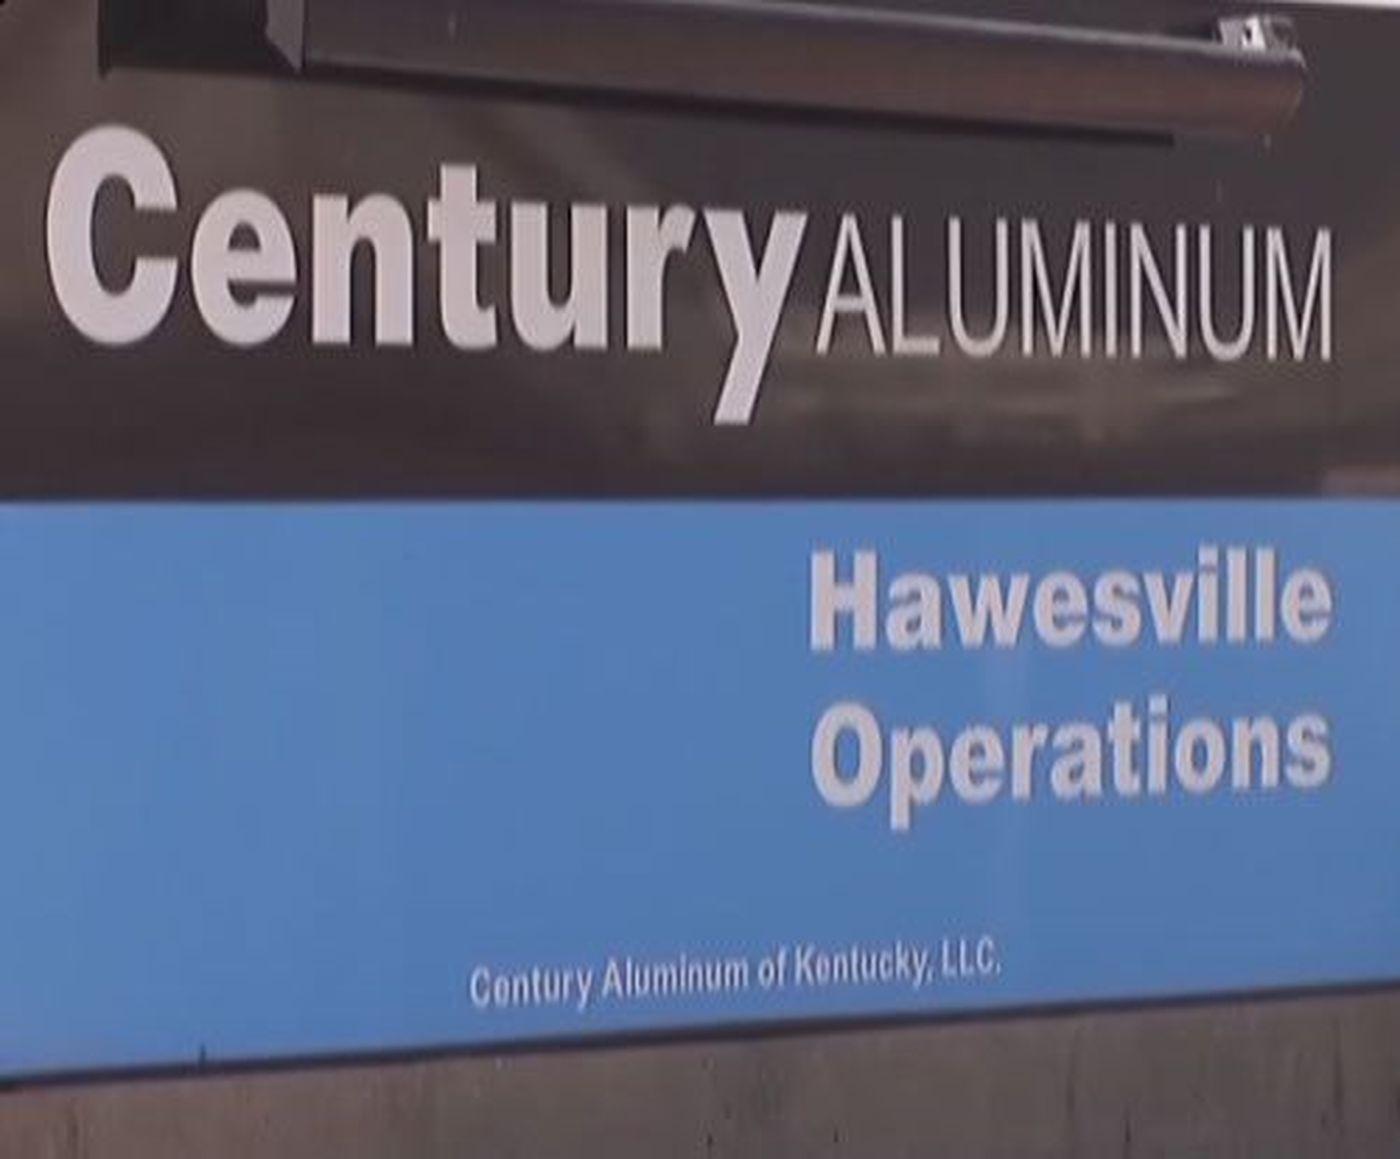 Alumnium Century Logo - Century Aluminum reaches decision on power contract